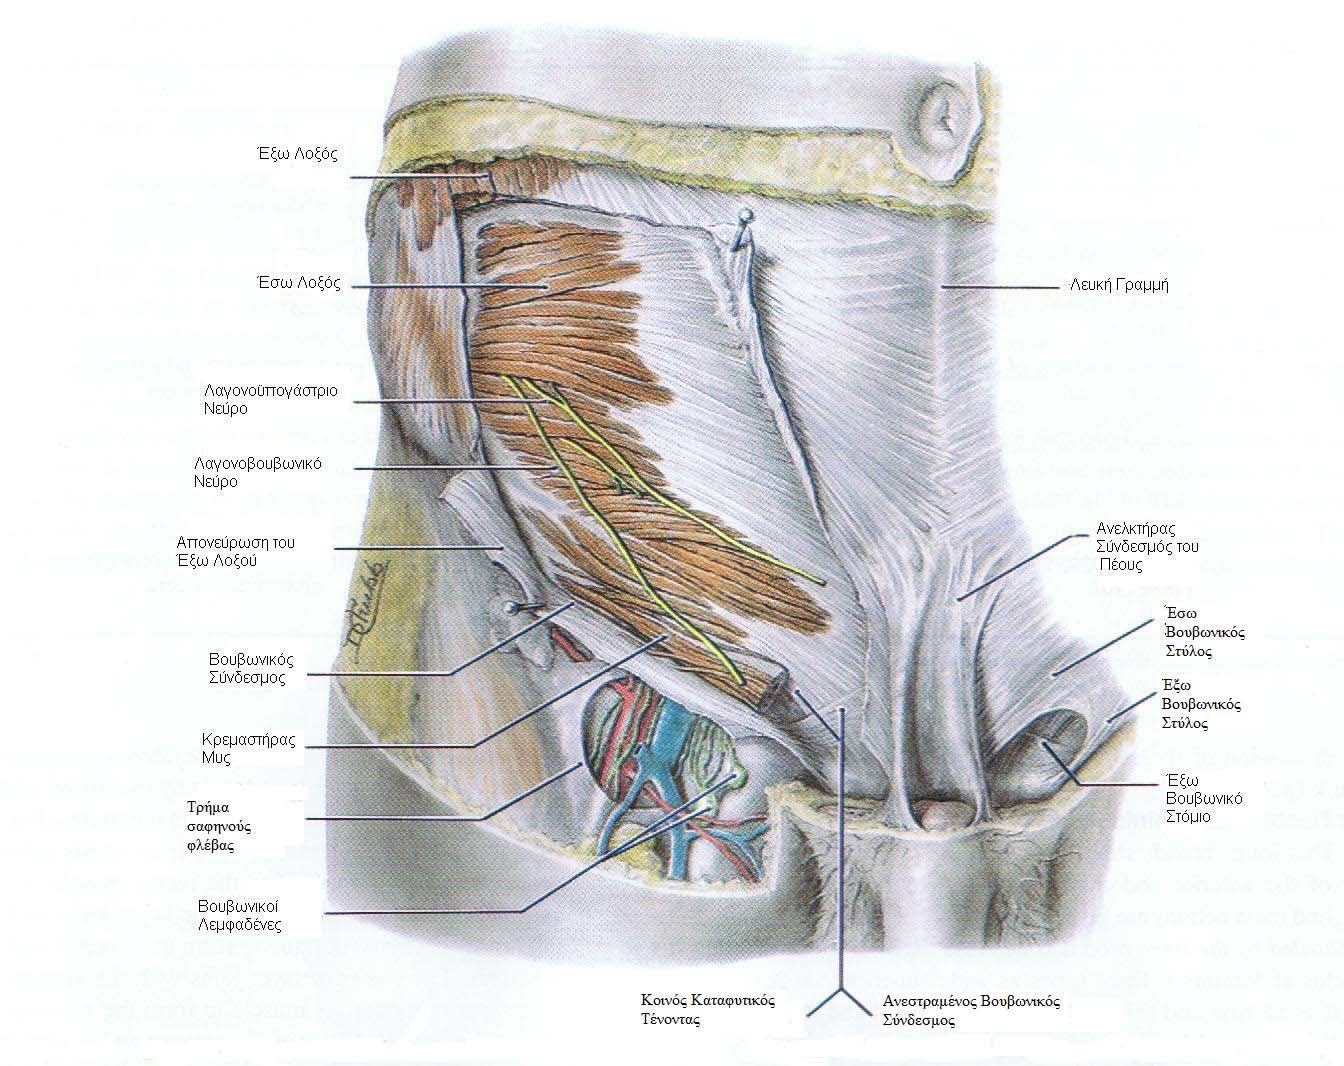 15 Το έδαφος του βουβωνικού πόρου σχηµατίζεται από την άνω επιφάνεια του βουβωνικού συνδέσµου και τον ανεστραµµένο βουβωνικό σύνδεσµο ( Lacunar ligament ή Gimbernat's ligament ).